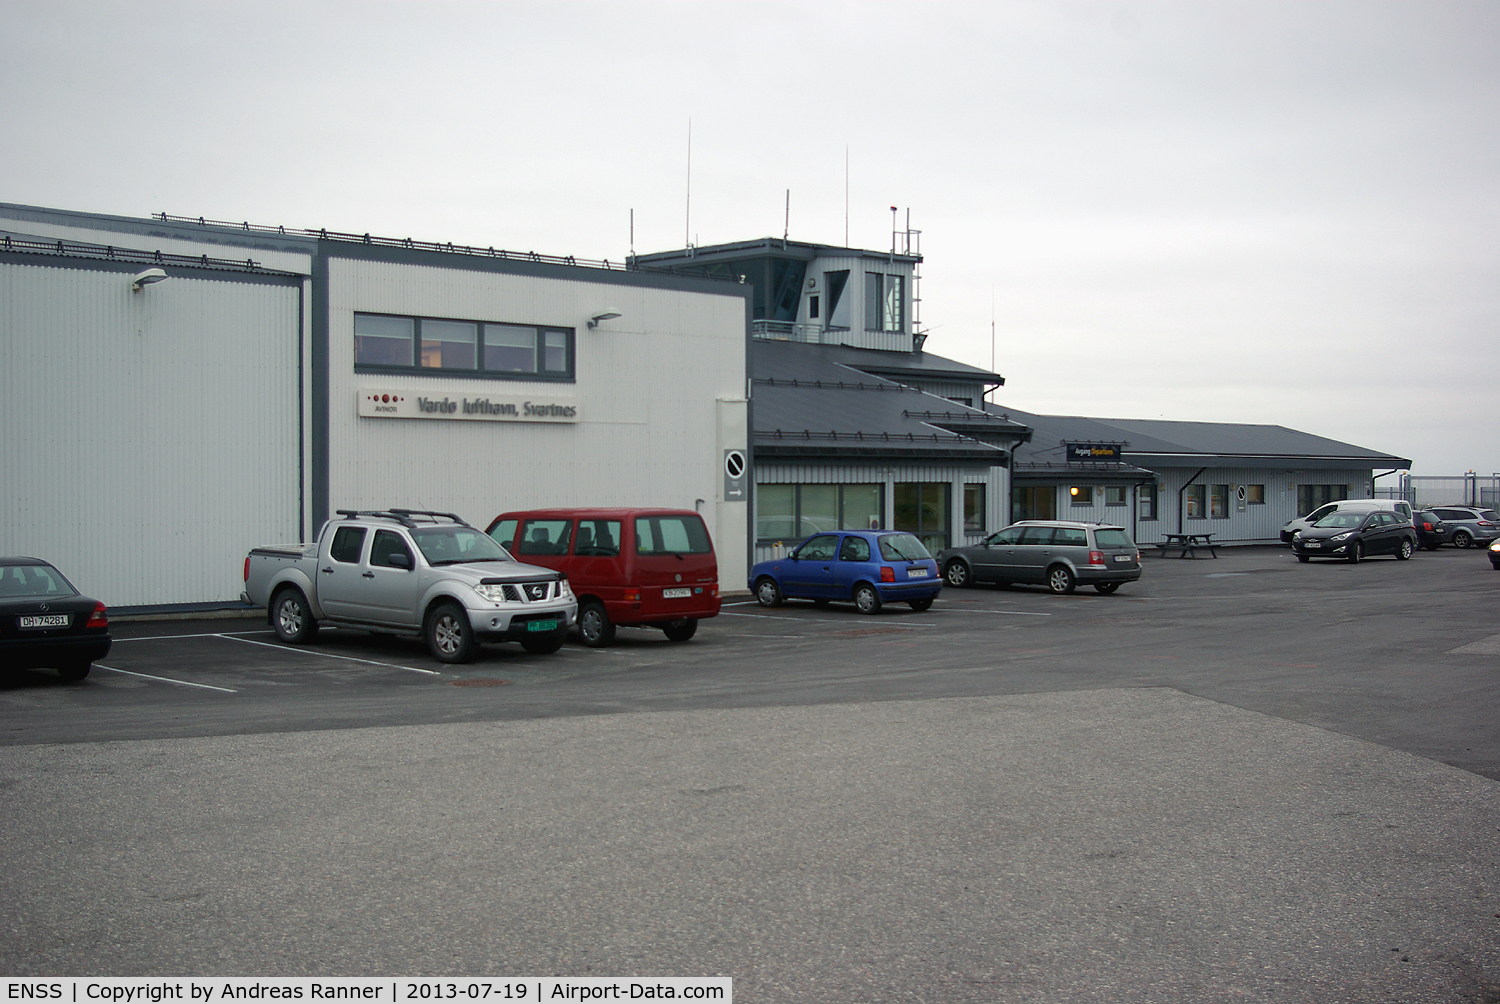 Vardø Airport, Svartnes, Vardø, Finnmark Norway (ENSS) - Vardø airport